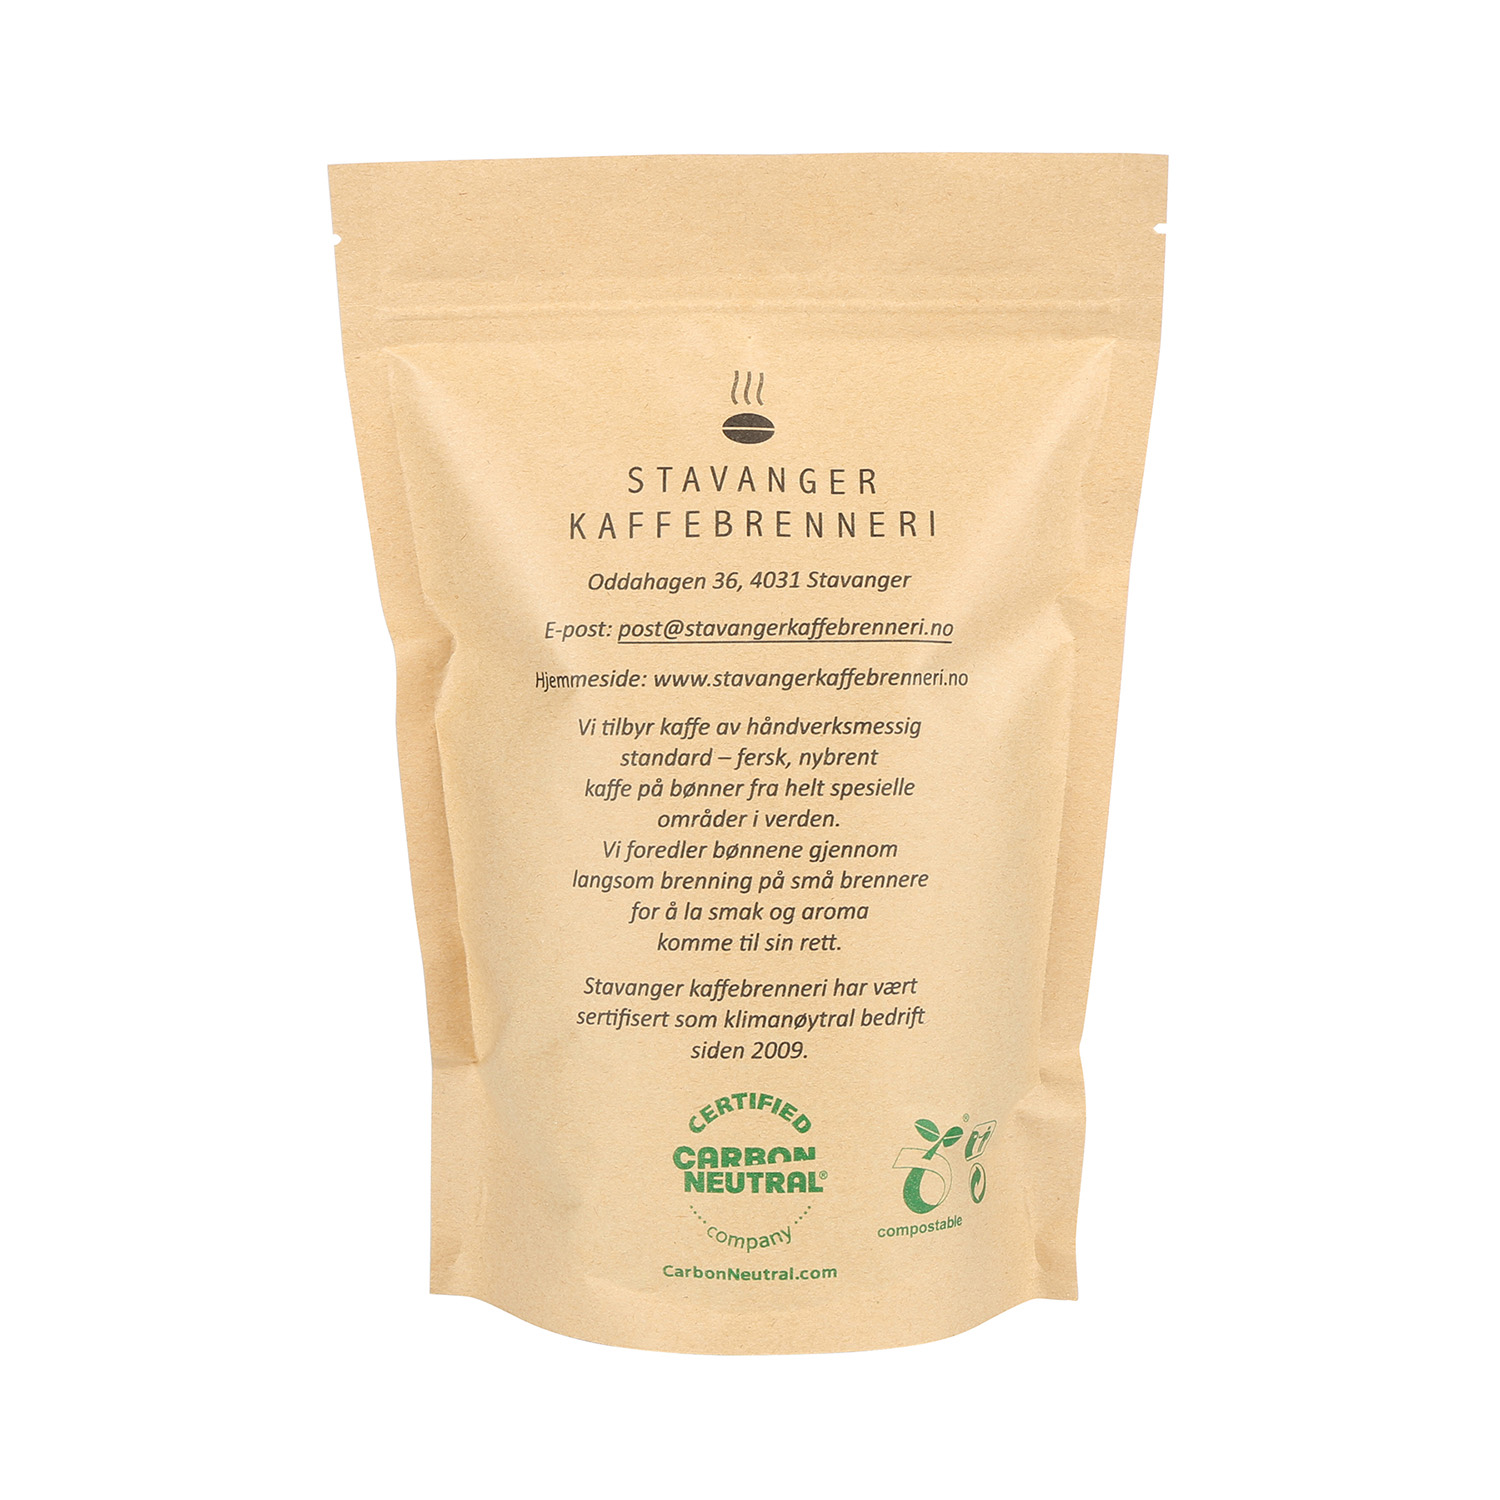 El café resellable compostable Eco impreso personalizado de 16 oz se levanta bolsas con válvula